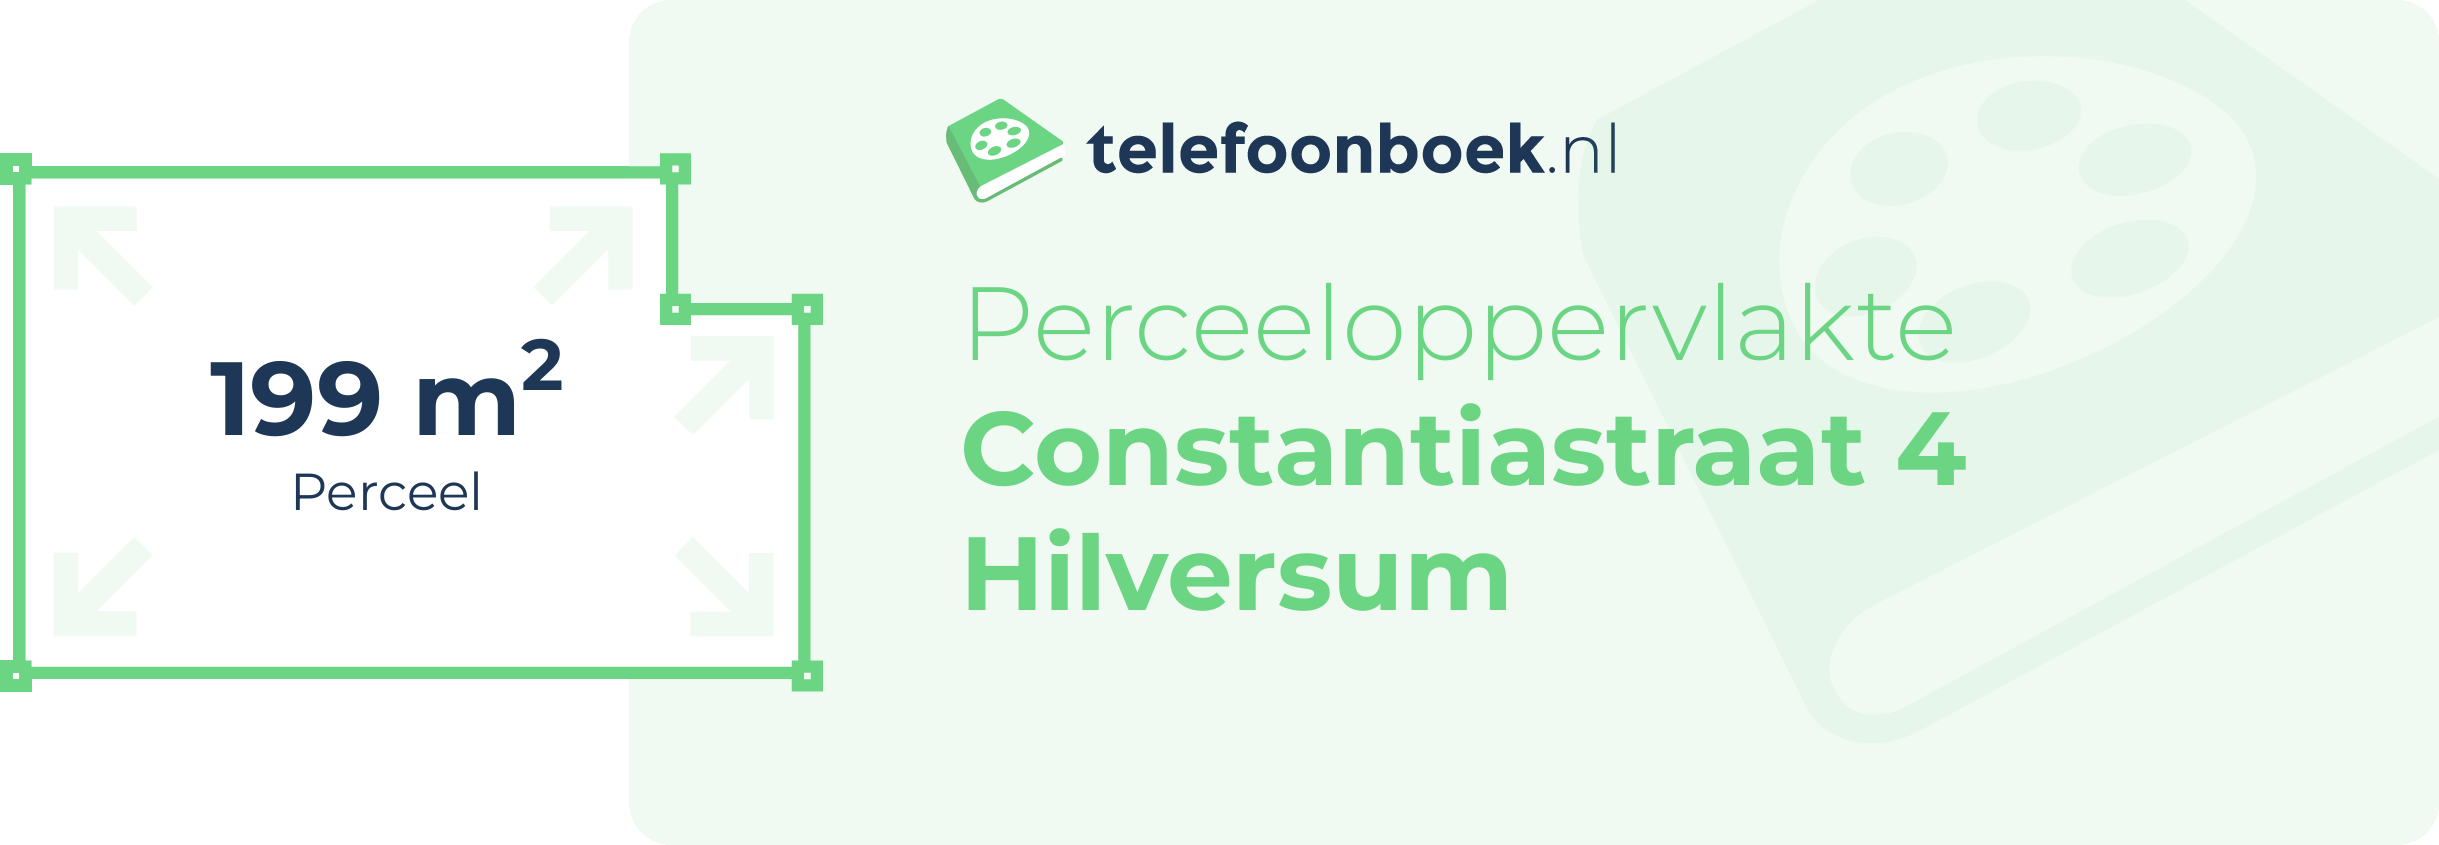 Perceeloppervlakte Constantiastraat 4 Hilversum